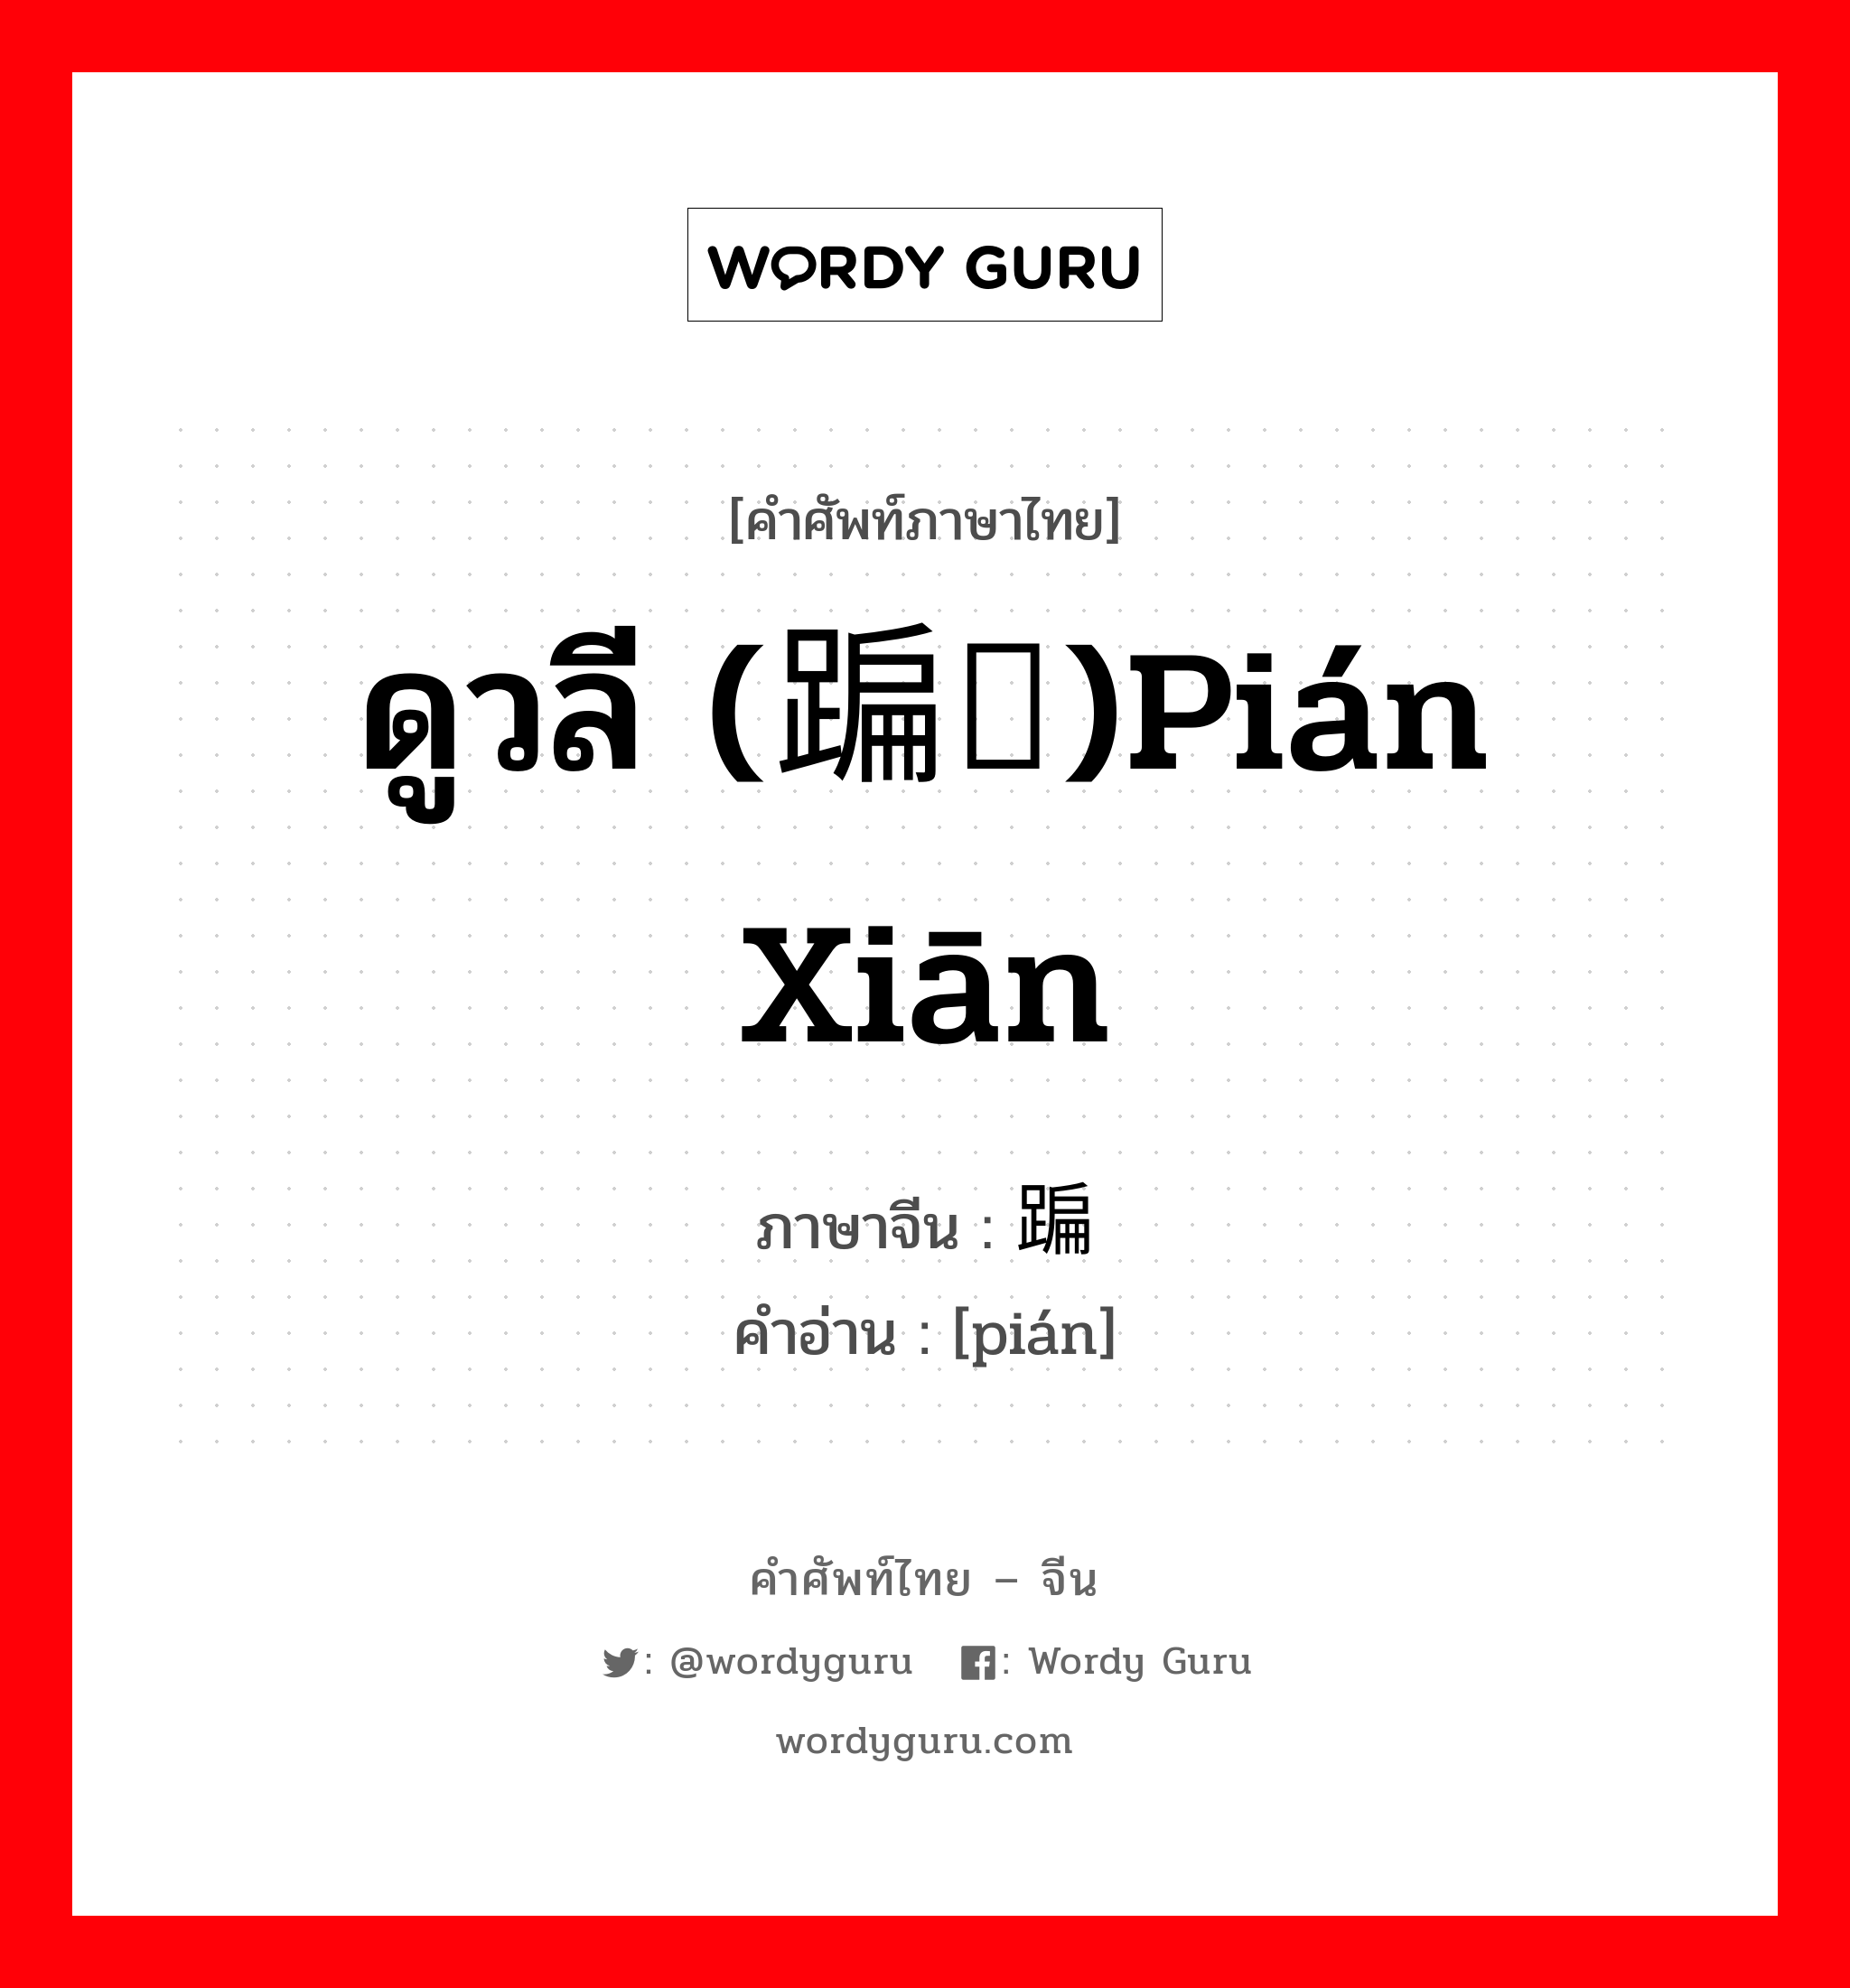 ดูวลี (蹁跹)pián xiān ภาษาจีนคืออะไร, คำศัพท์ภาษาไทย - จีน ดูวลี (蹁跹)pián xiān ภาษาจีน 蹁 คำอ่าน [pián]